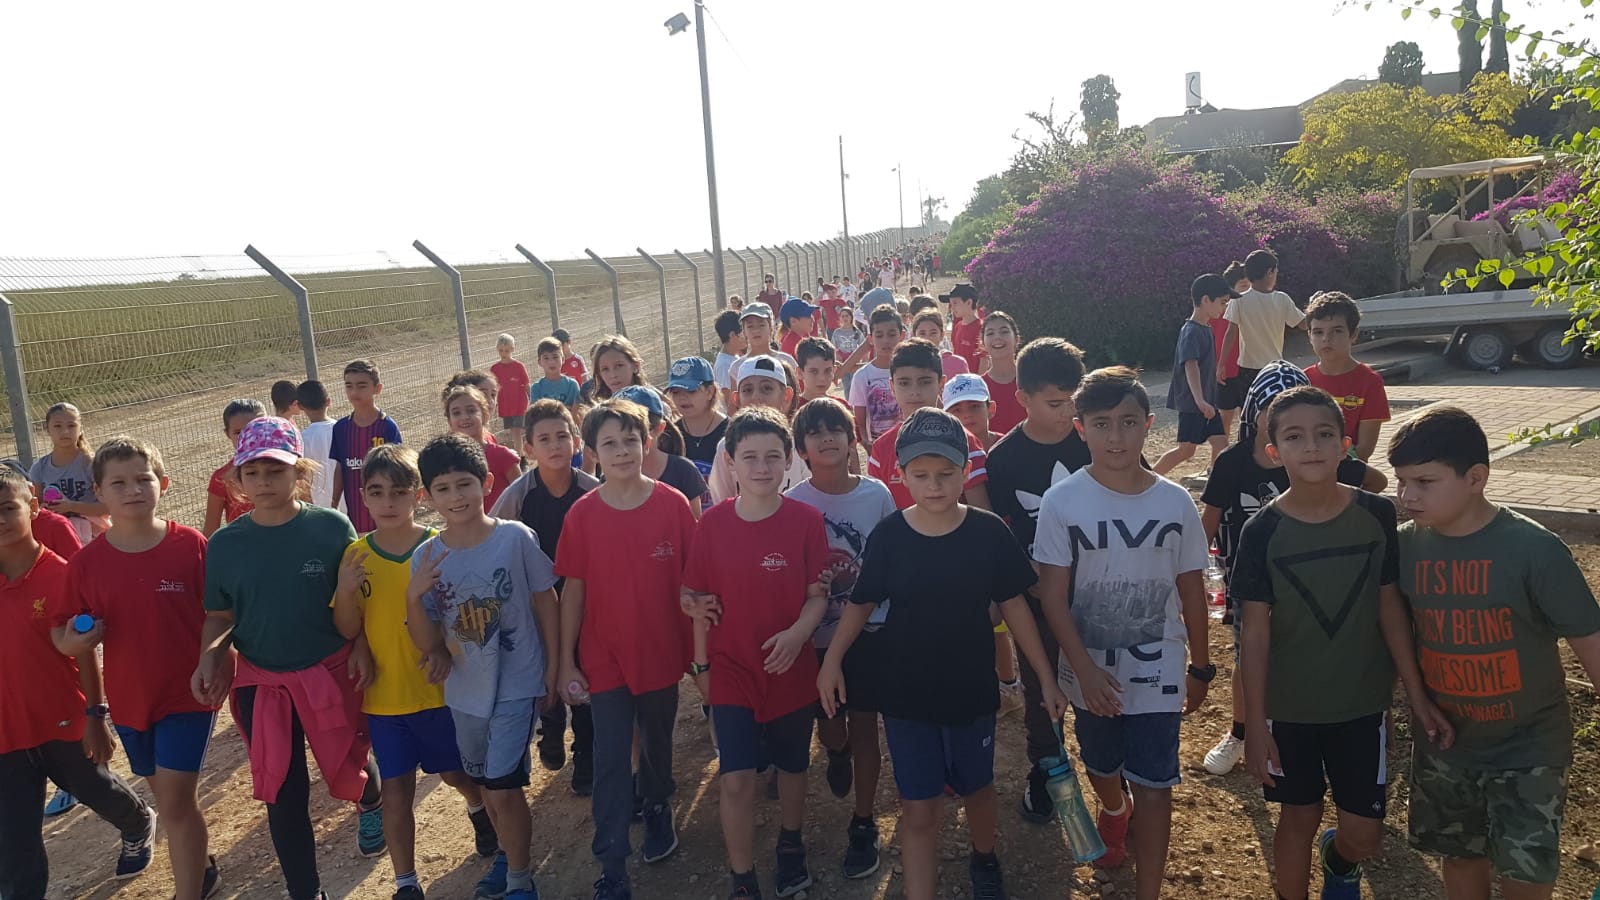 יום ההליכה העולמי בבי"ס ניצני הנגב שבמועצה האזורית בני שמעון